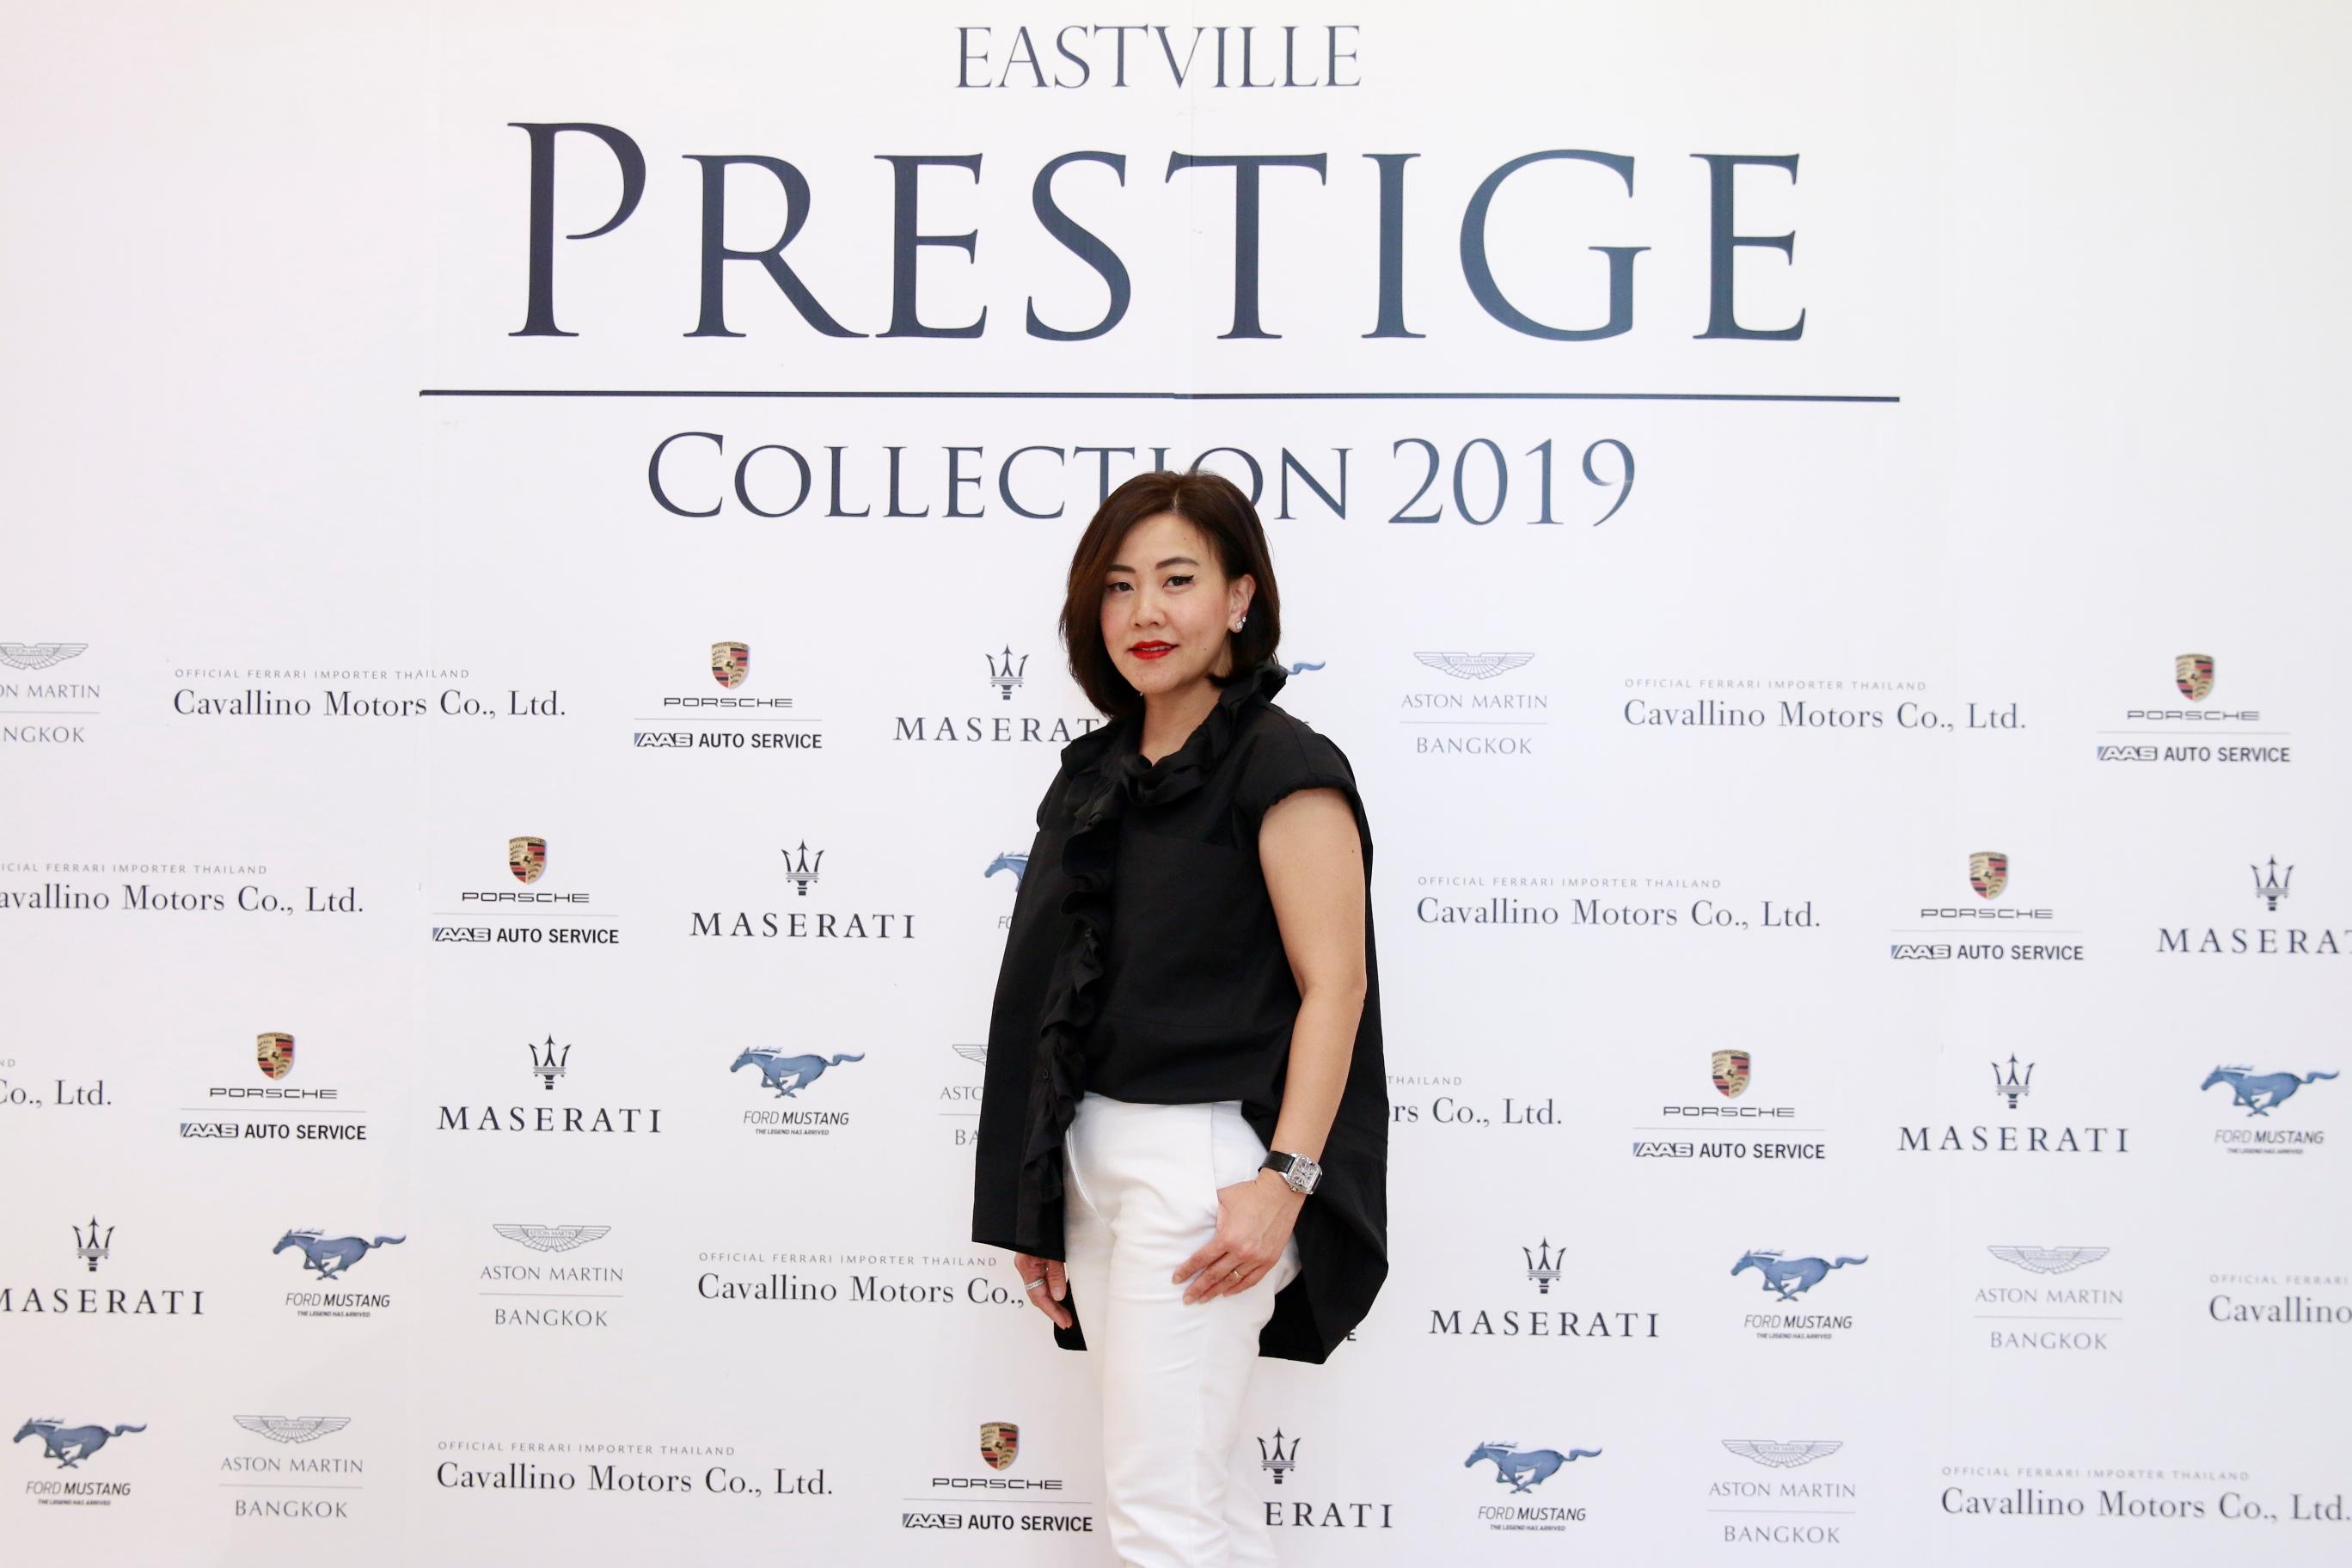 5 ยนตรกรรมสุดหรูที่จะได้ยลโฉมงาน EastVille Prestige Collection 2019